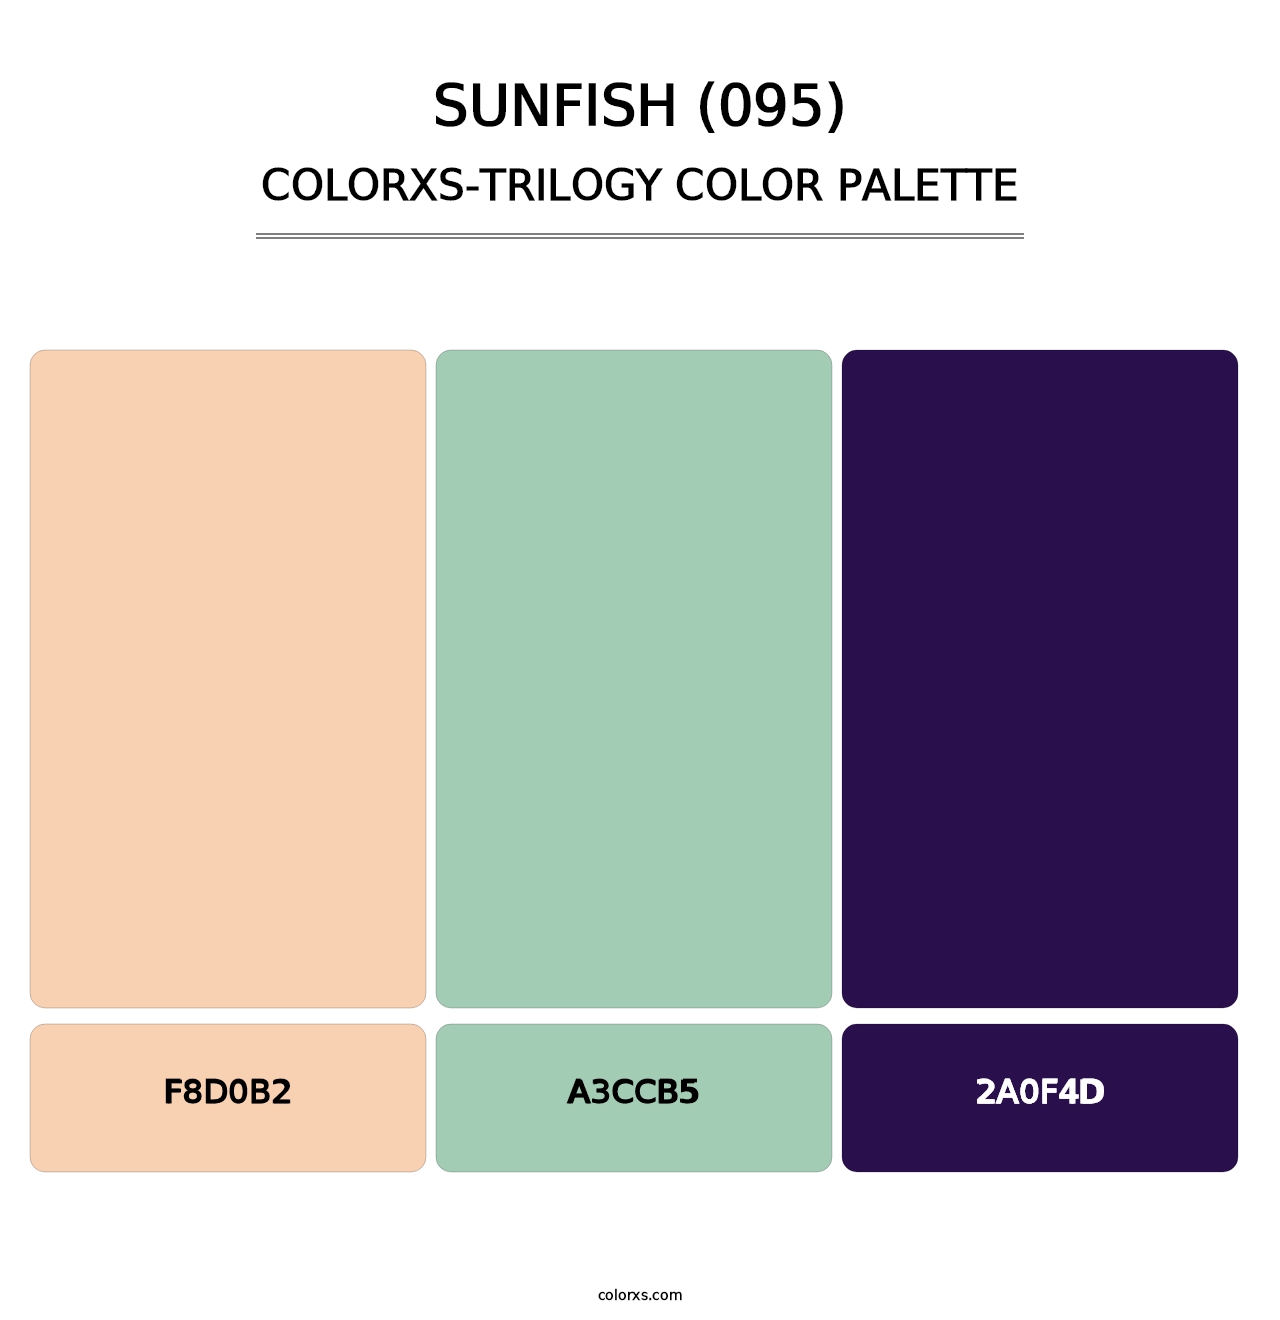 Sunfish (095) - Colorxs Trilogy Palette